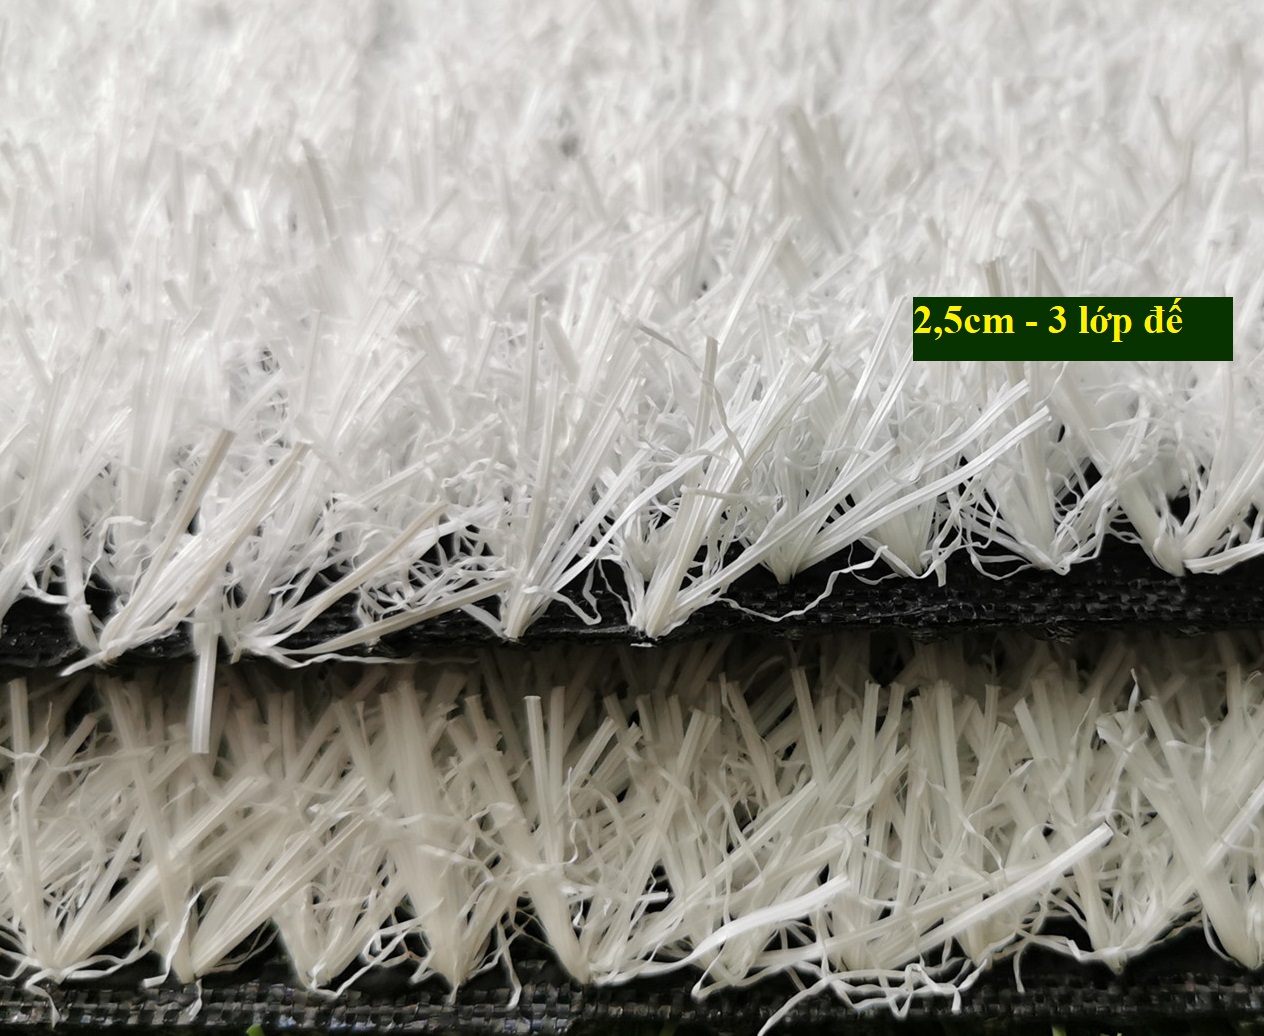 Cỏ nhân tạo màu trắng- Cửa hàng cỏ nhân tạo Hoa Sen Việt Đà Nẵng